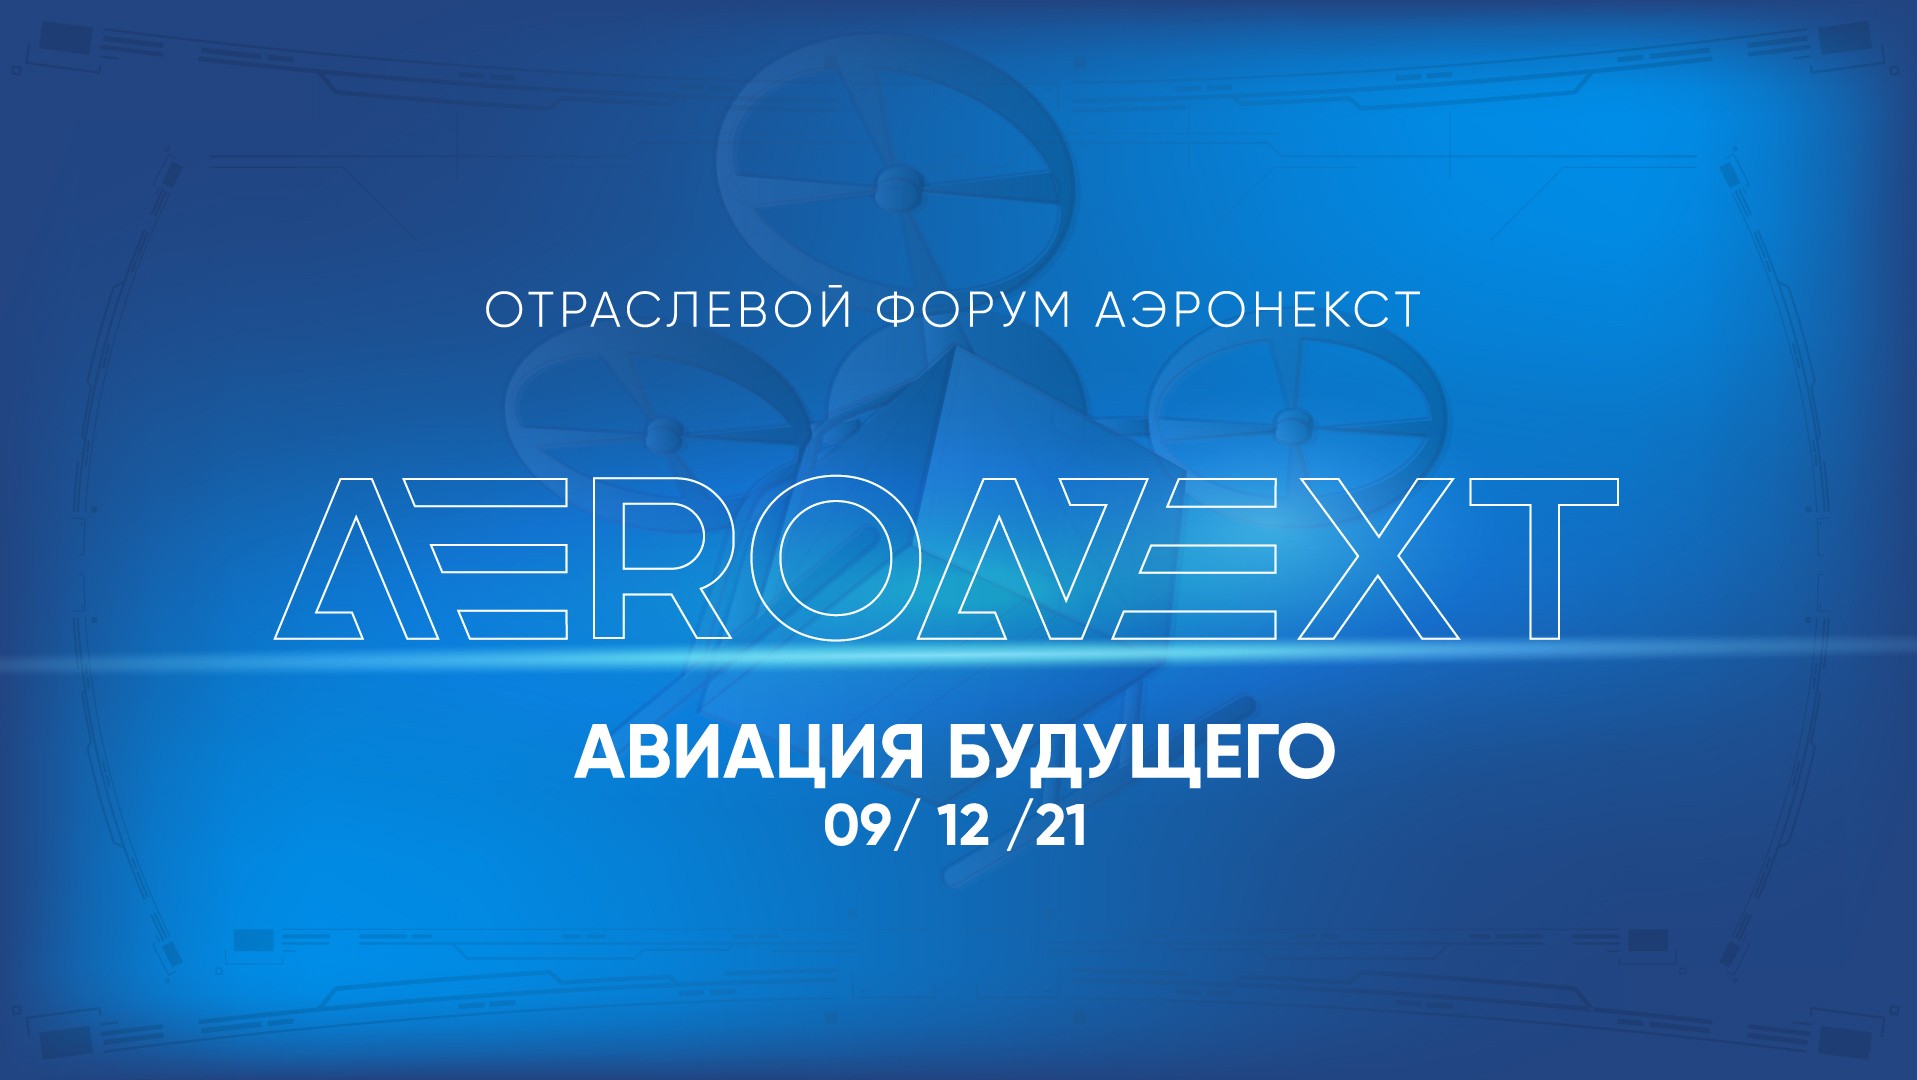 ОТРАСЛЕВОЙ ФОРУМ AERONEXT 2021 ПРОЙДЕТ В МОСКВЕ 9 ДЕКАБРЯ - Новости